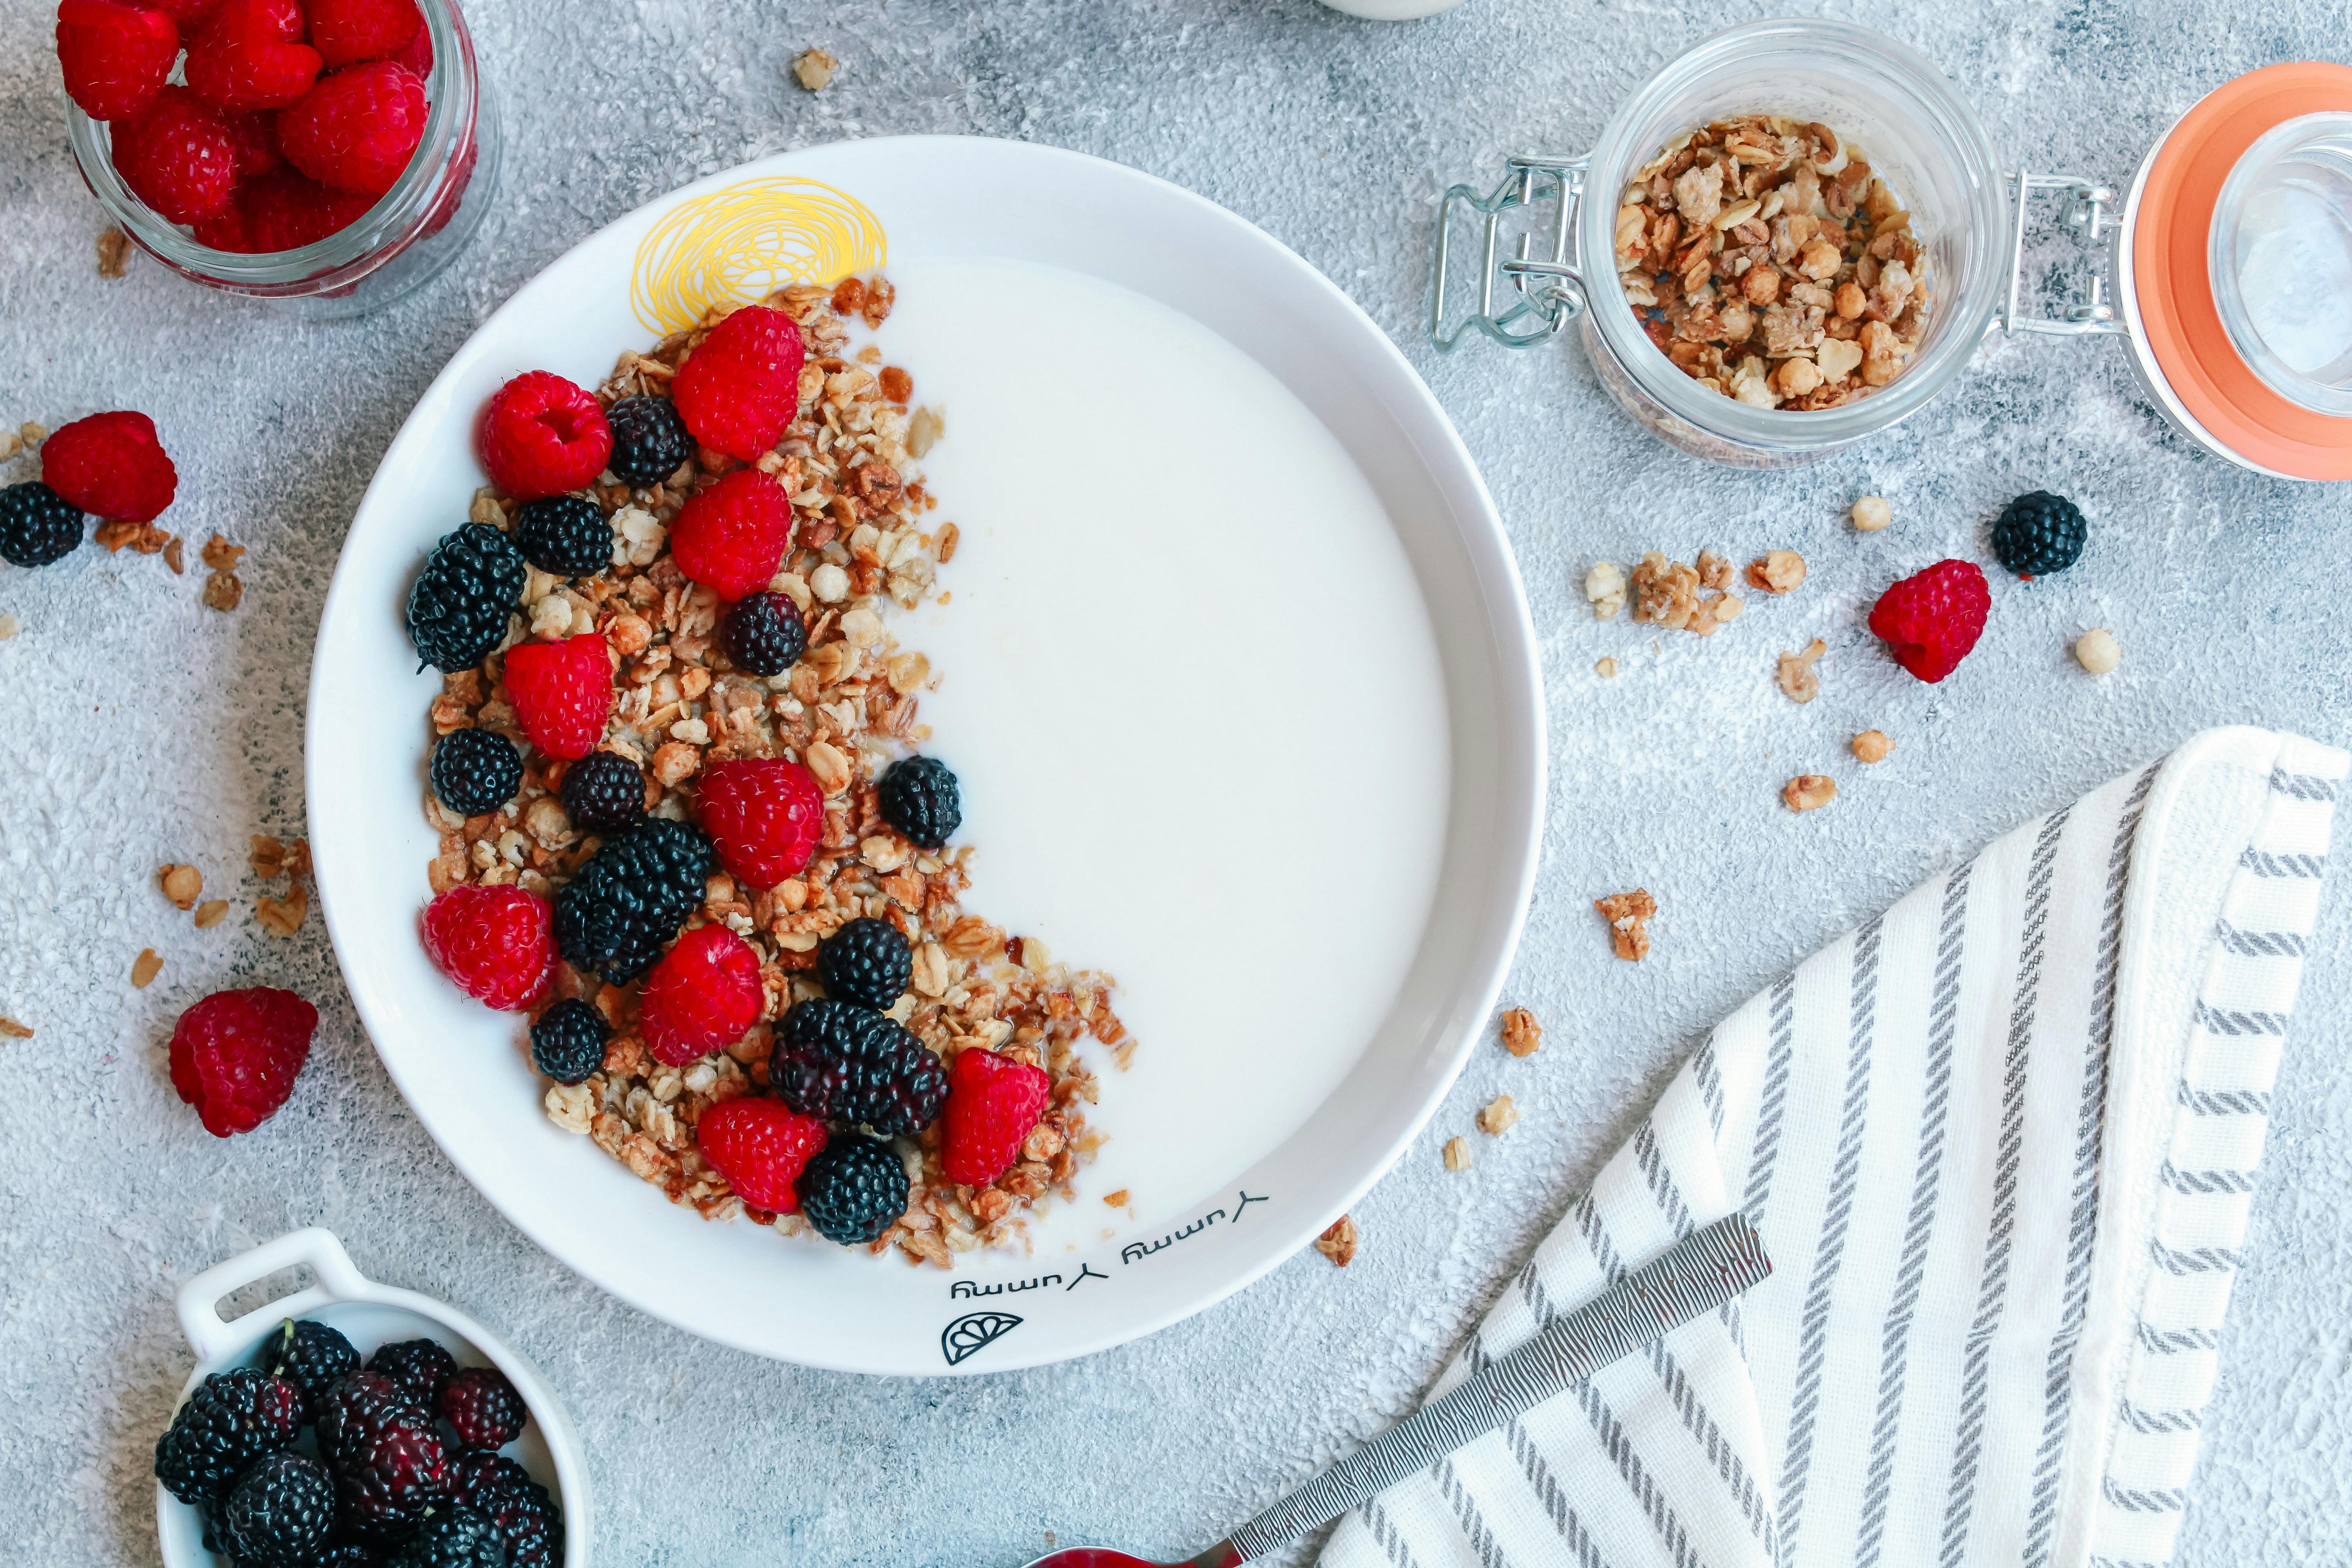 Wholegrain cereal and fruit yoghurt bowl